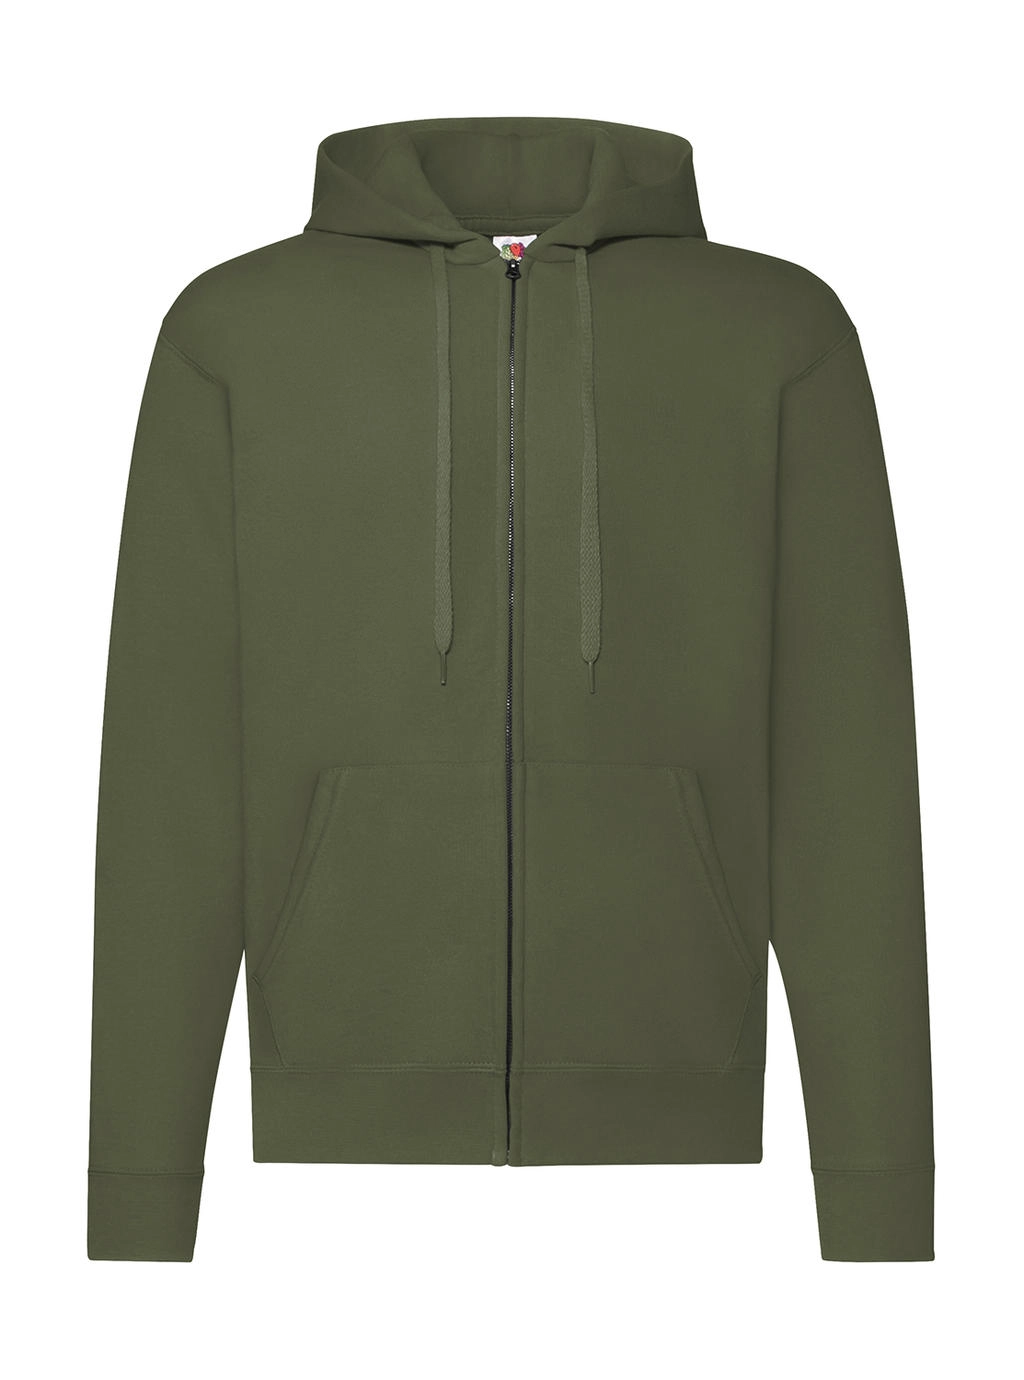 Classic Hooded Sweat Jacket zum Besticken und Bedrucken in der Farbe Classic Olive mit Ihren Logo, Schriftzug oder Motiv.